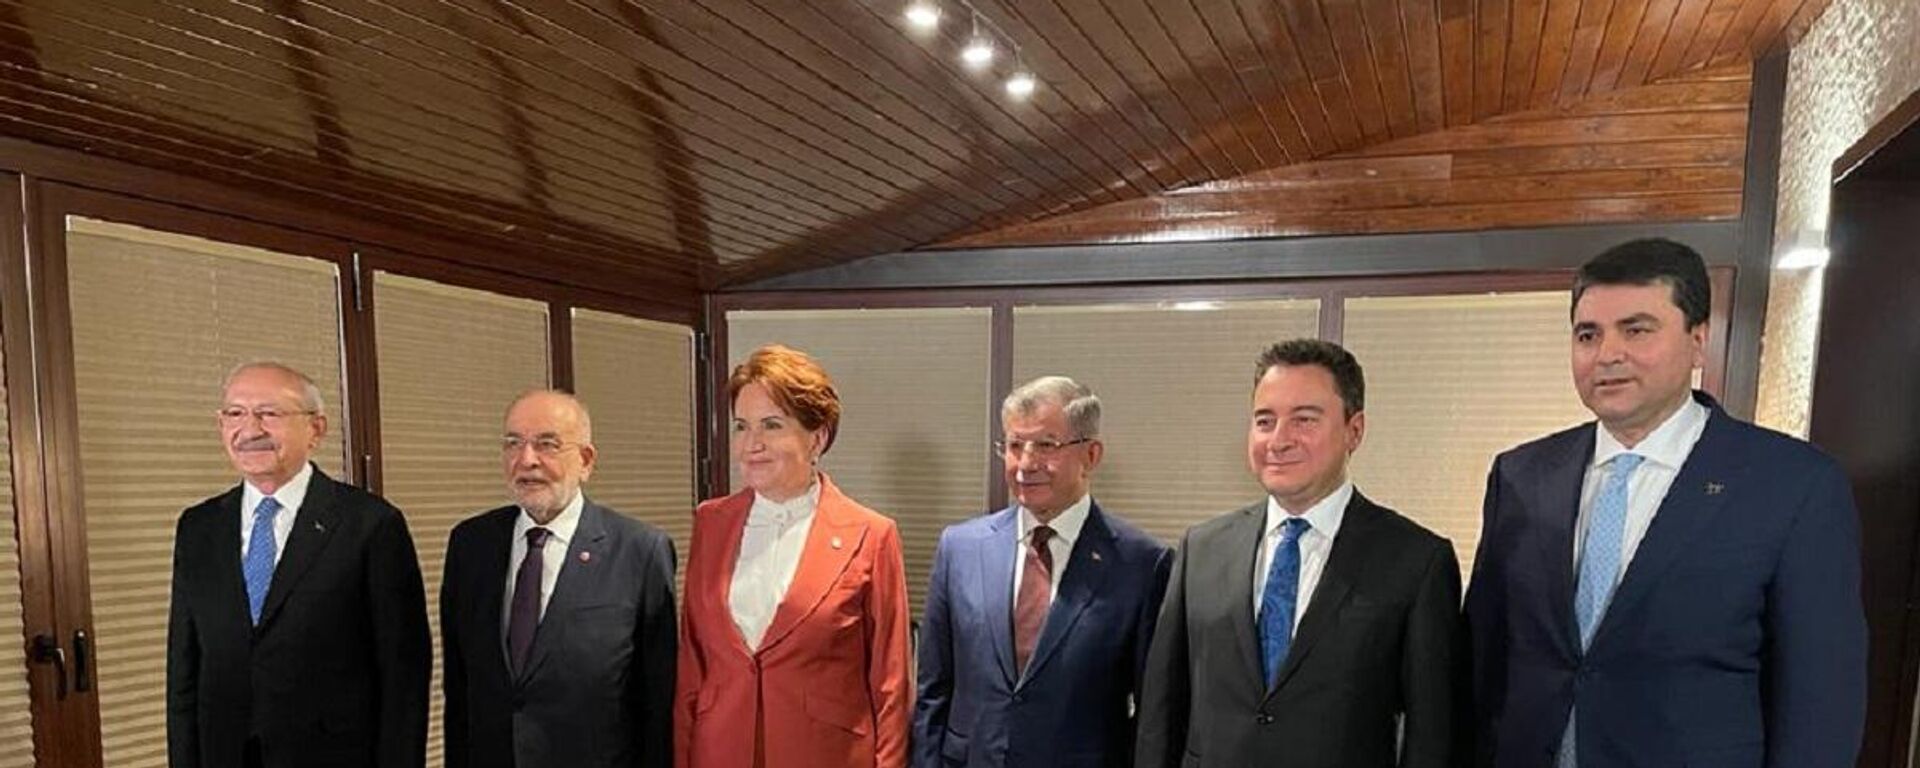 CHP Genel Başkanı Kemal Kılıçdaroğlu'nun daveti ile 6 parti lideri akşam yemeğinde bir araya geldi. - Sputnik Türkiye, 1920, 12.02.2022